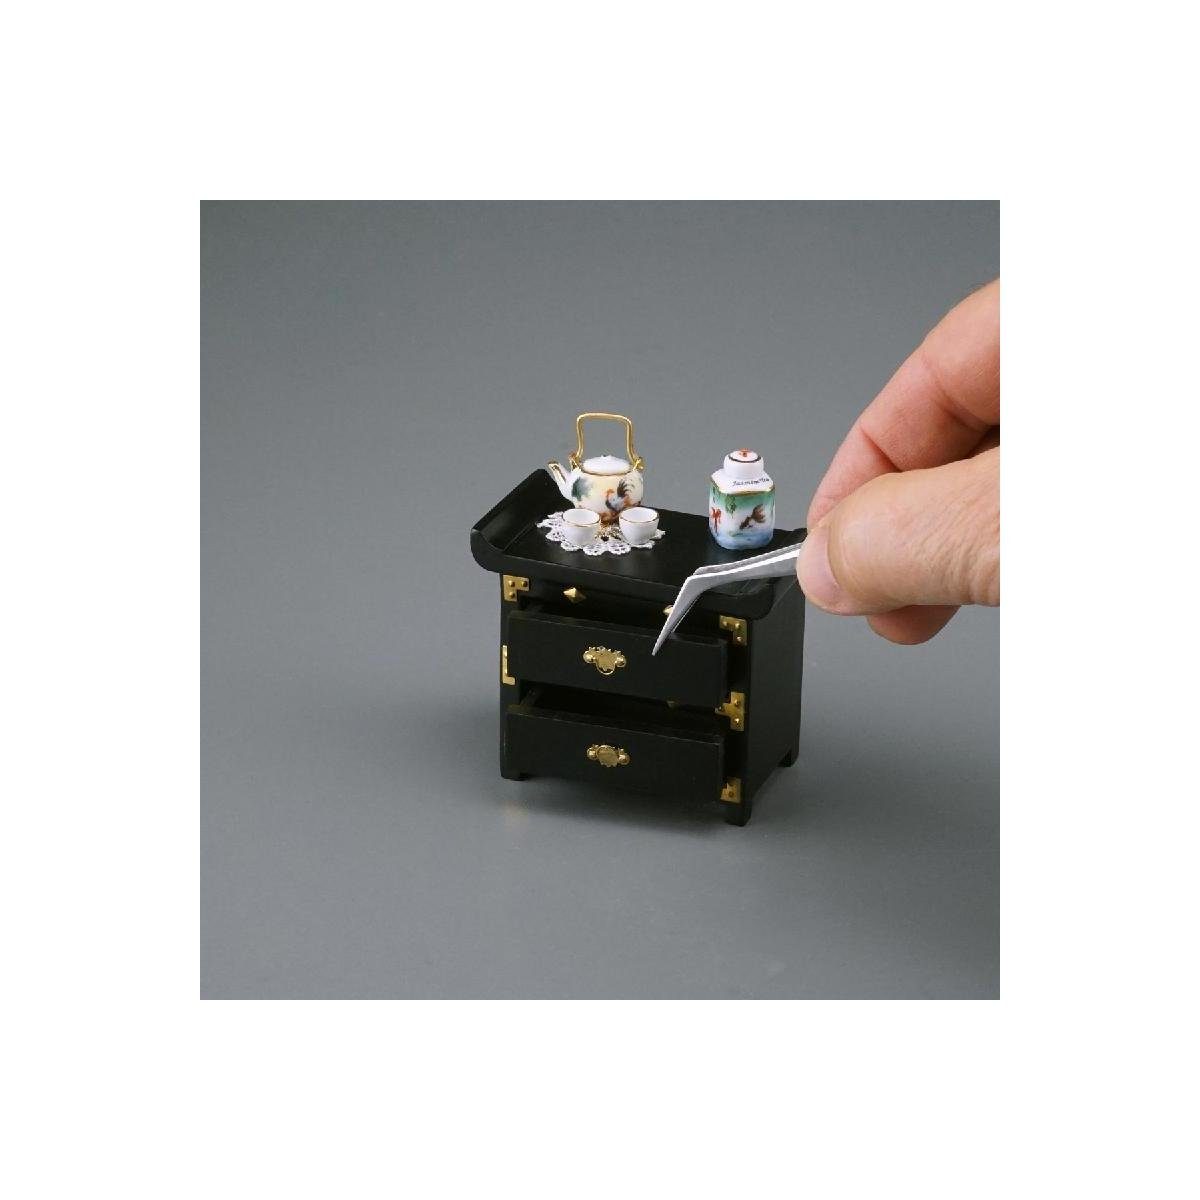 Reutter Porzellan Dekofigur 001.837/1 - Miniatur... Time", Lackkommode Japanische "Tea